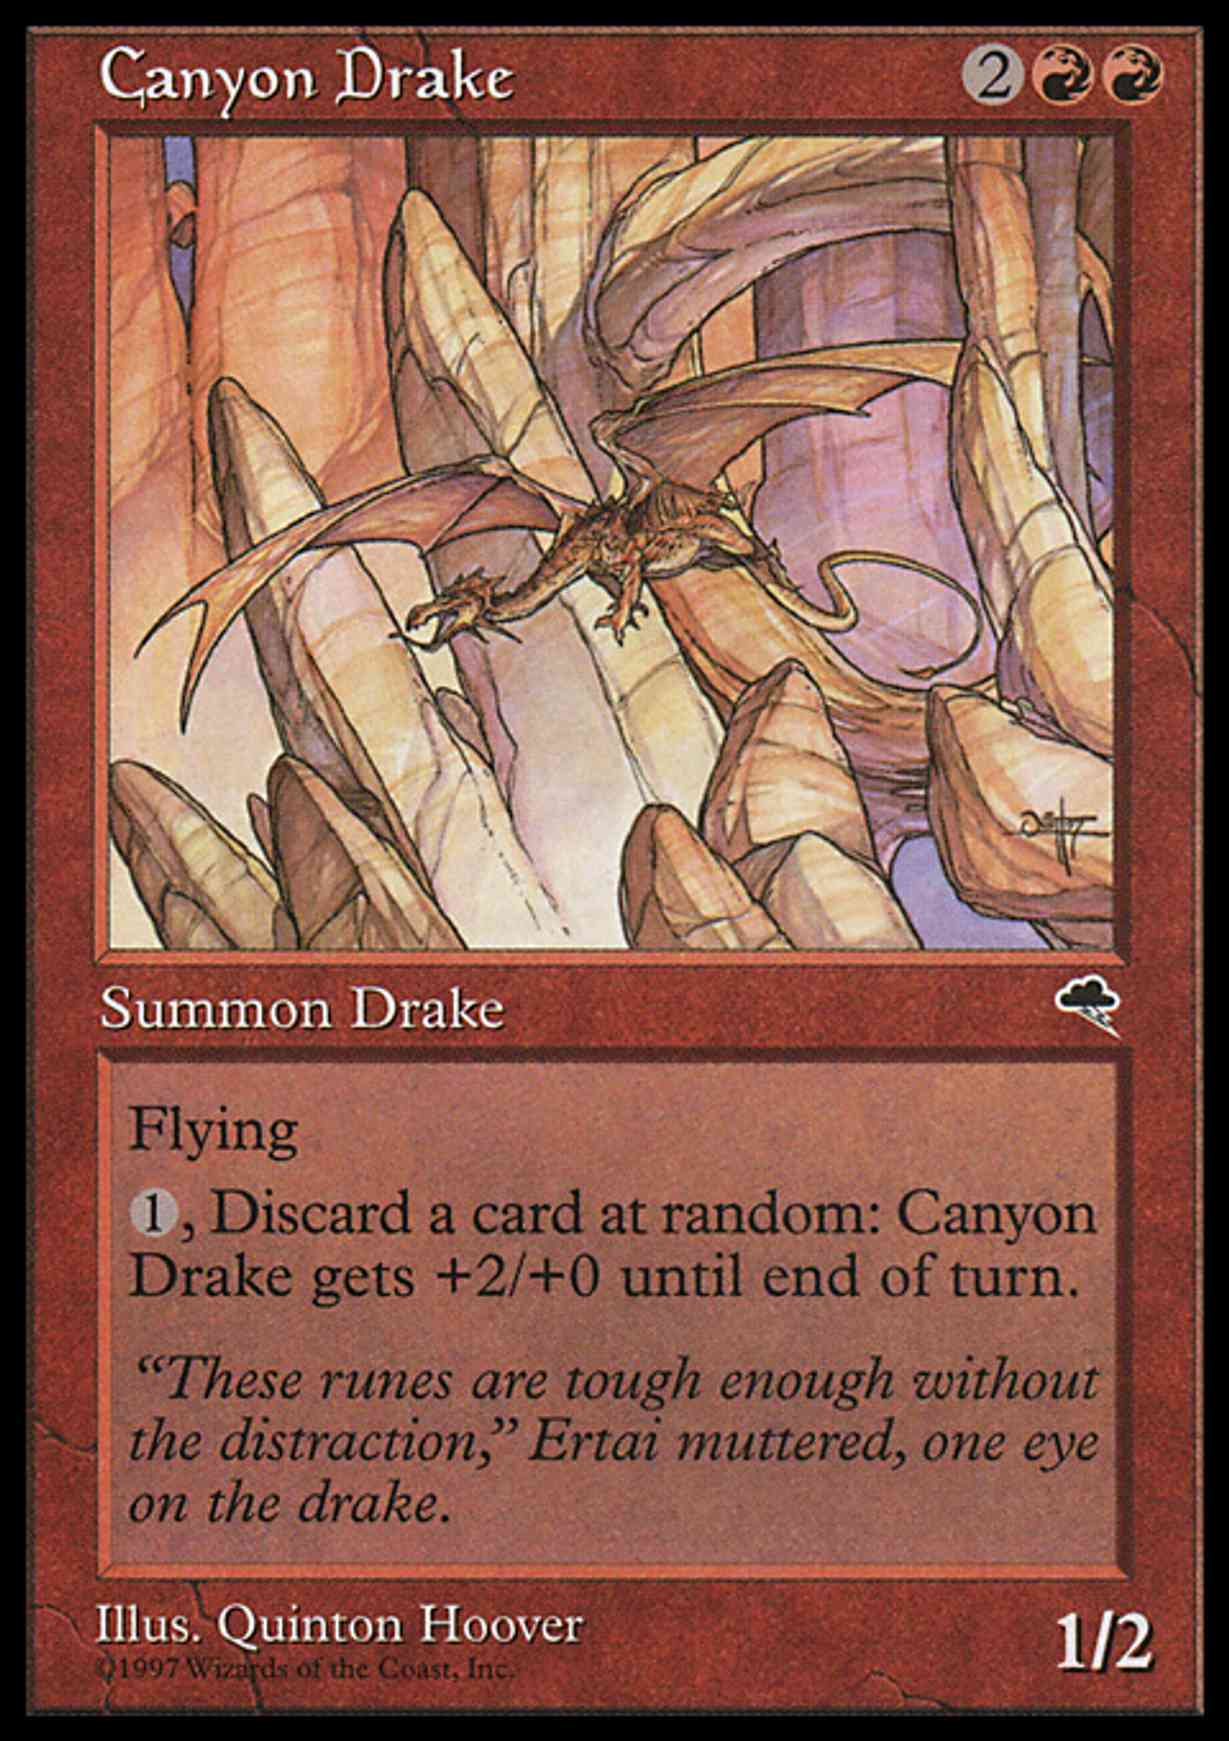 Canyon Drake magic card front